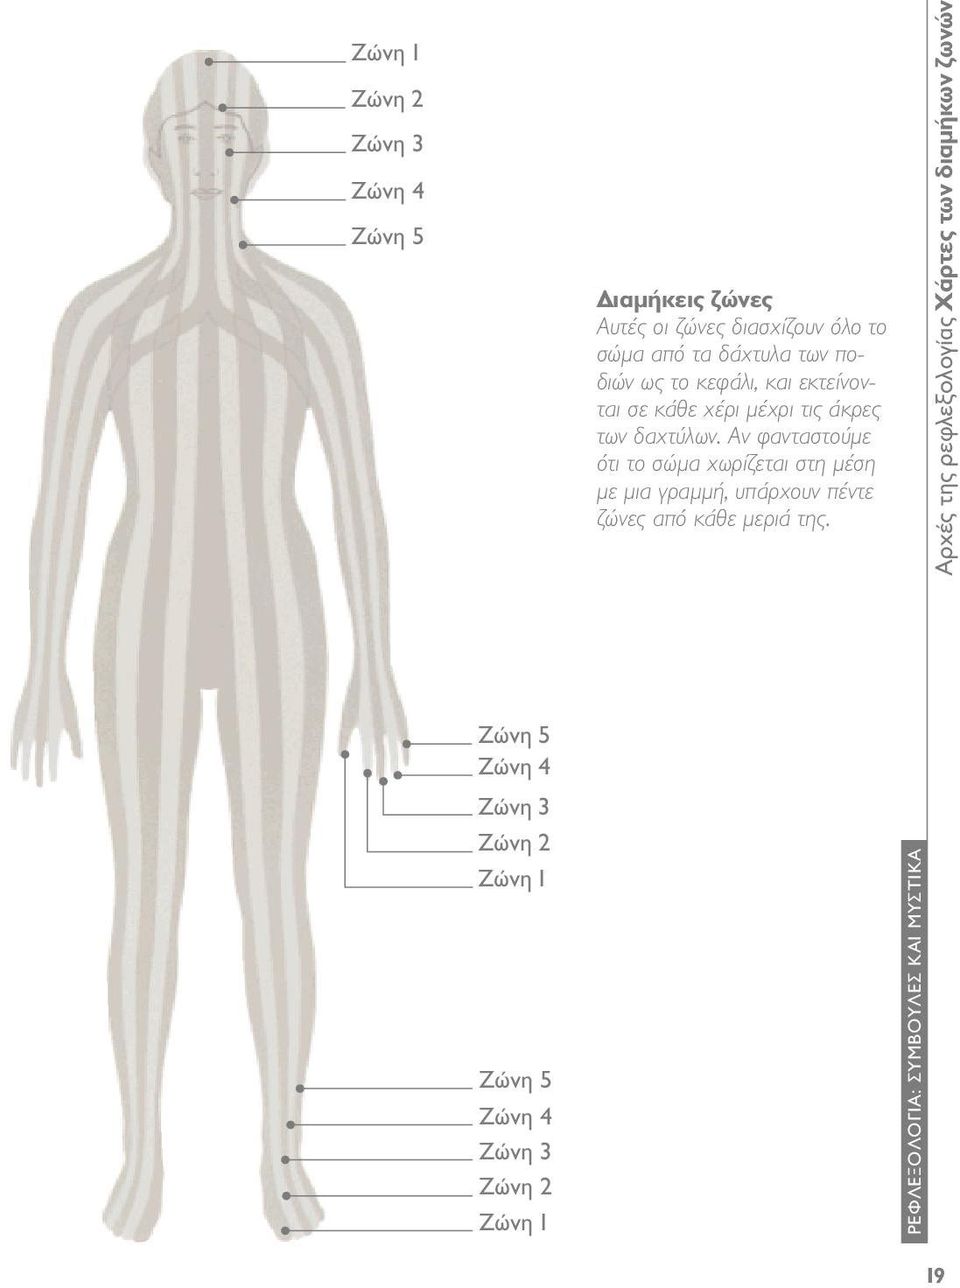 Αν φανταστούμε ότι το σώμα χωρίζεται στη μέση με μια γραμμή, υπάρχουν πέντε ζώνες από κάθε μεριά της.